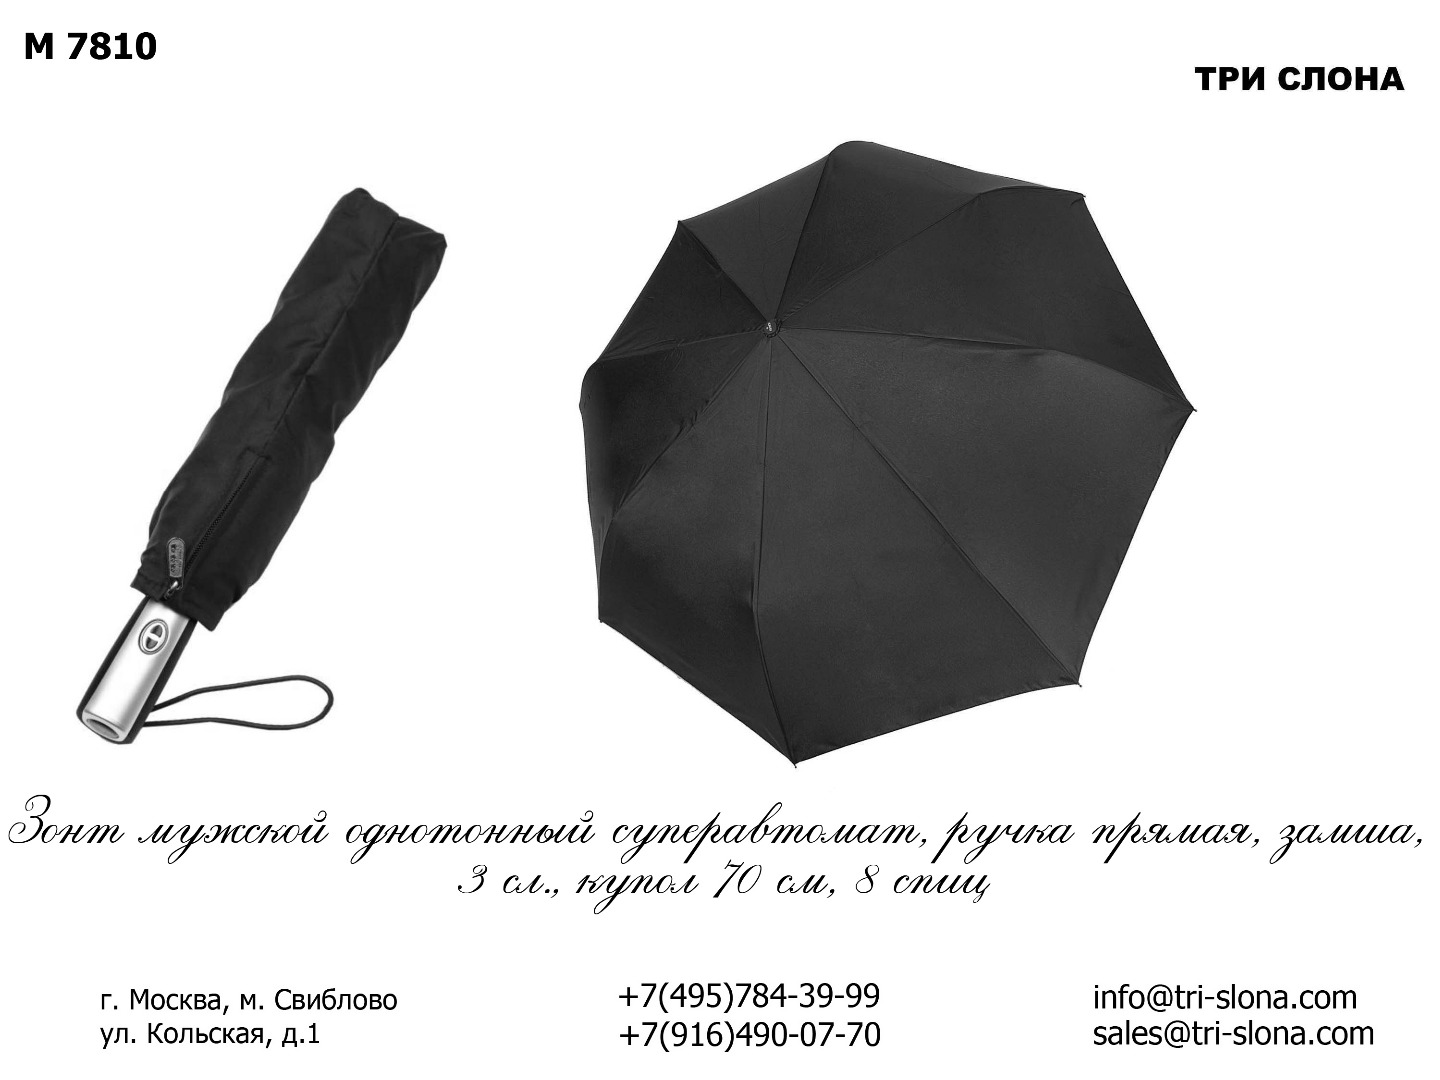 Зонт мужской складной Арт M7810 M 7810.jpg